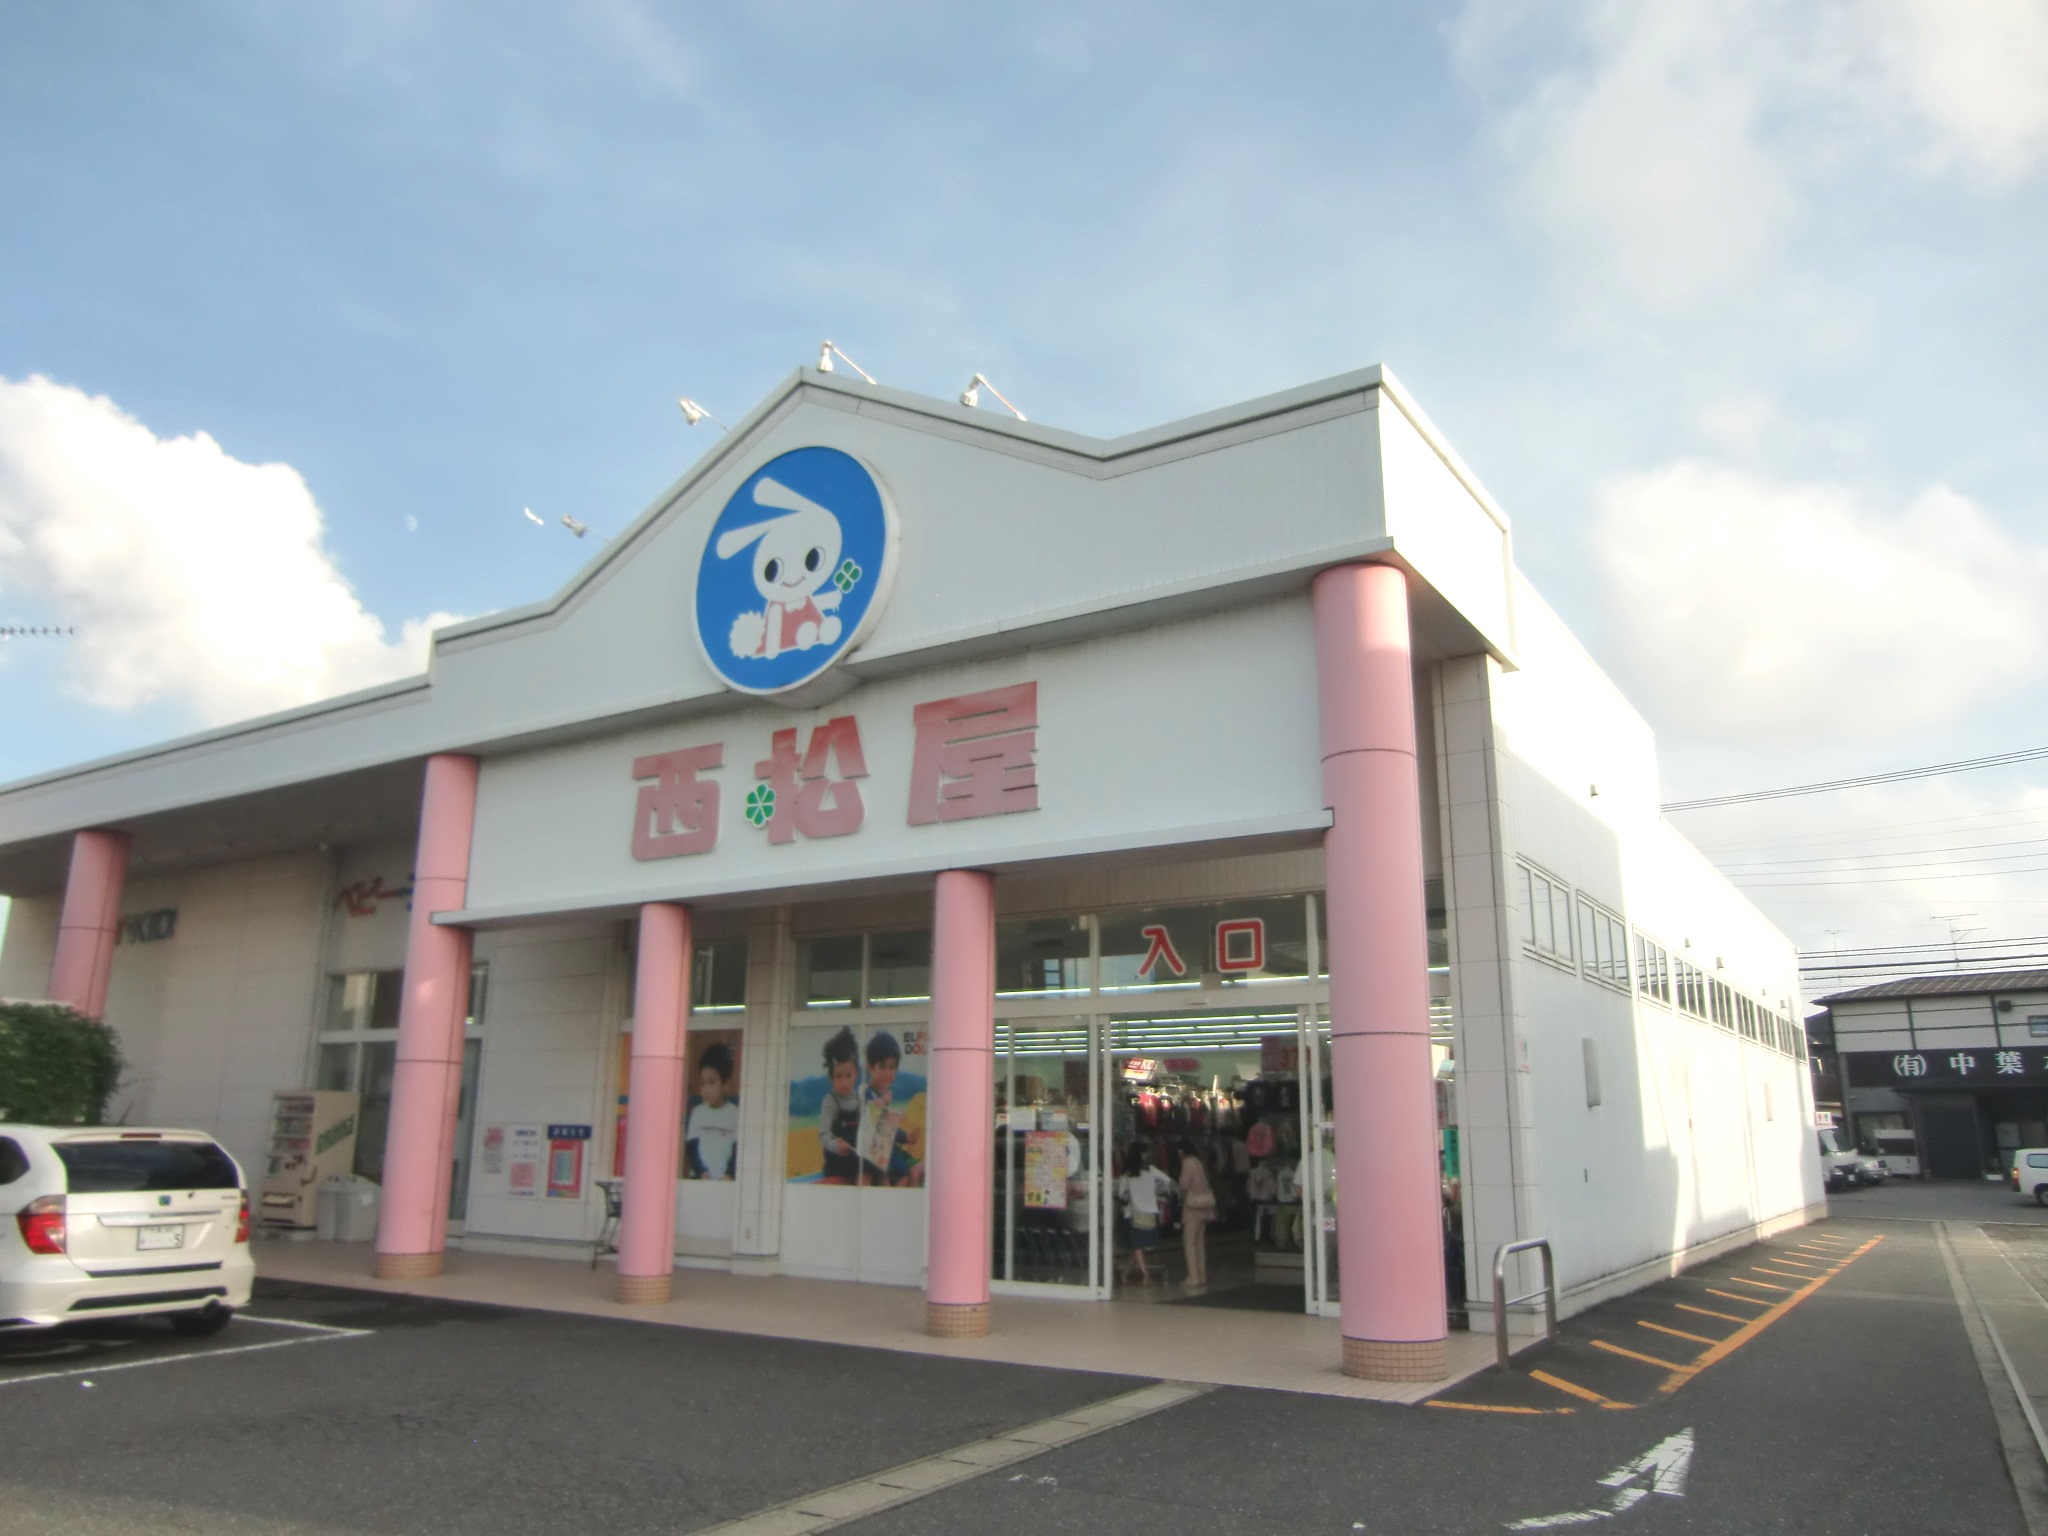 Shopping centre. 1261m until Nishimatsuya Inage Obuka store (shopping center)